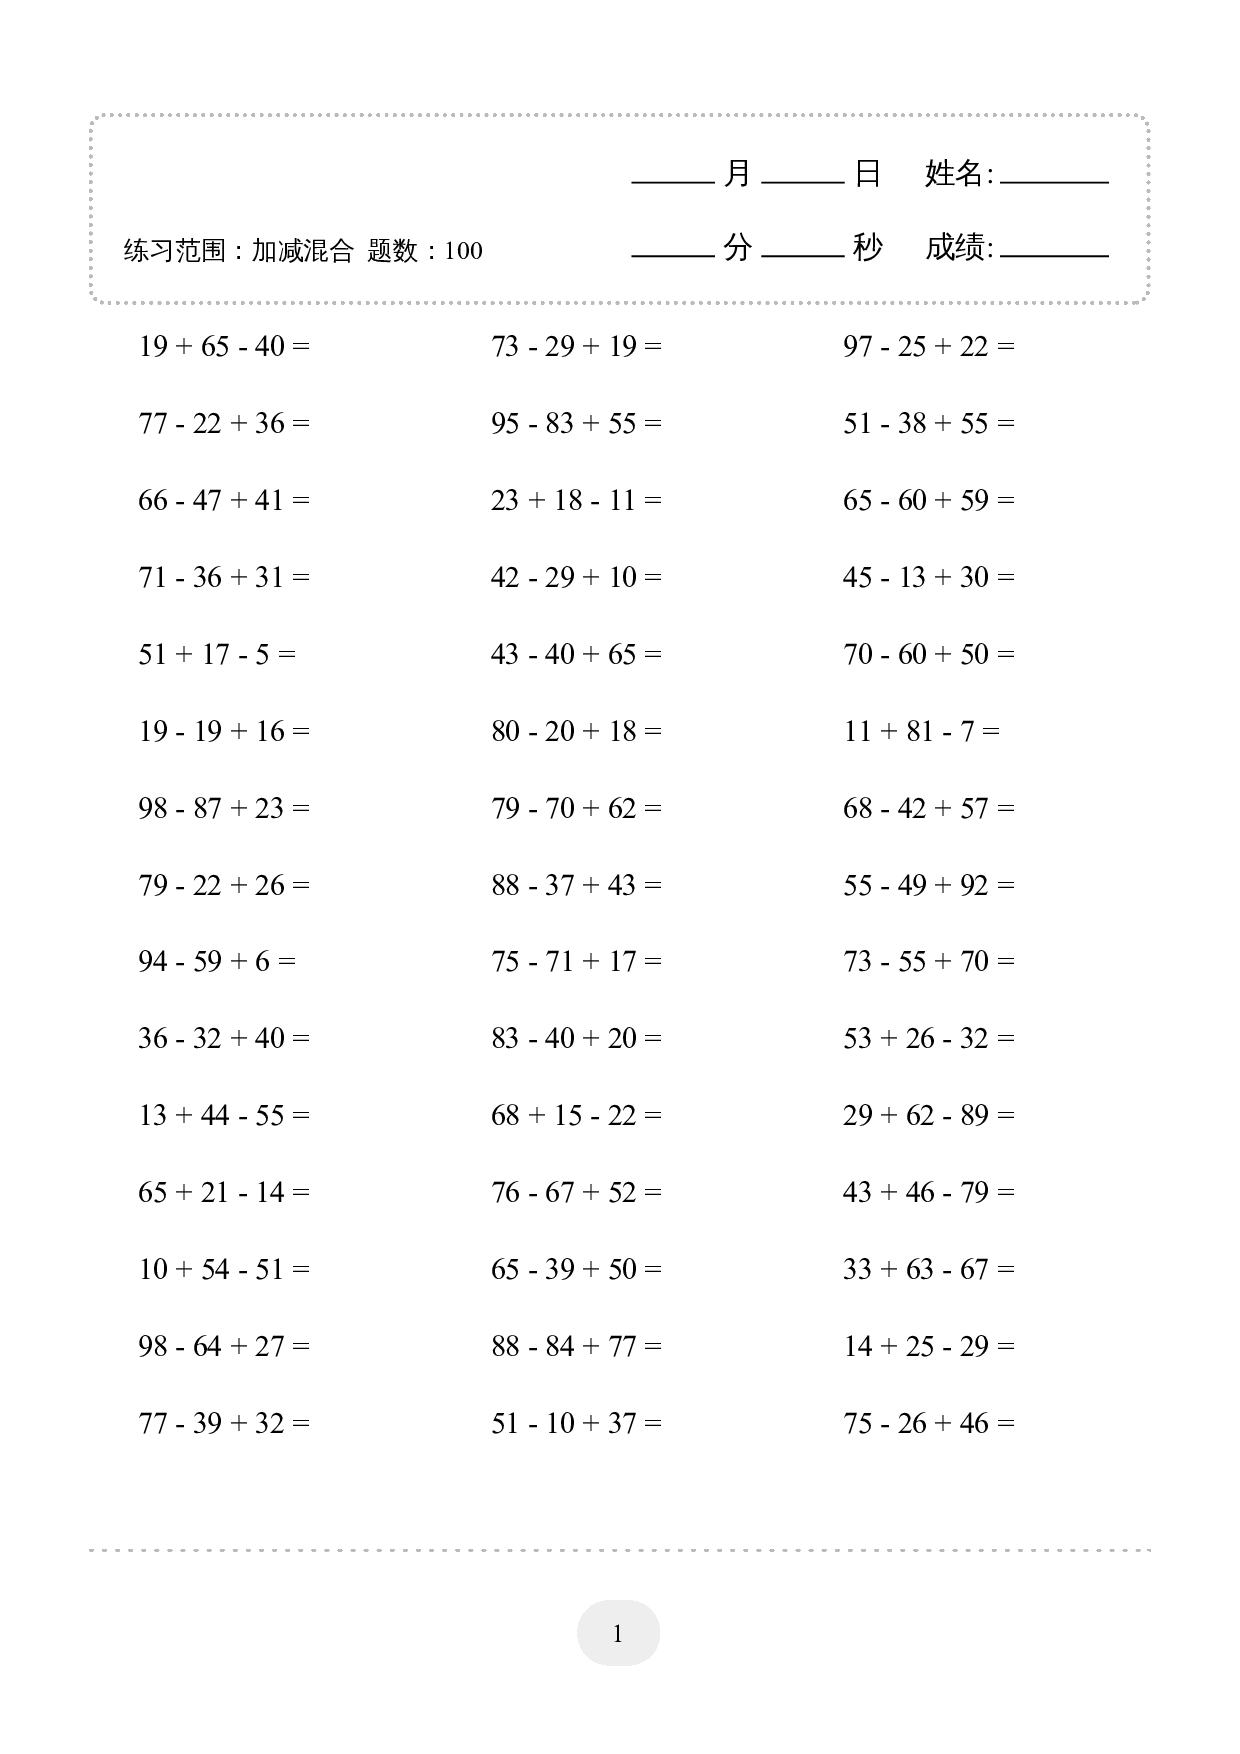 2年级上册数学口算题 (加减混合) 1000题